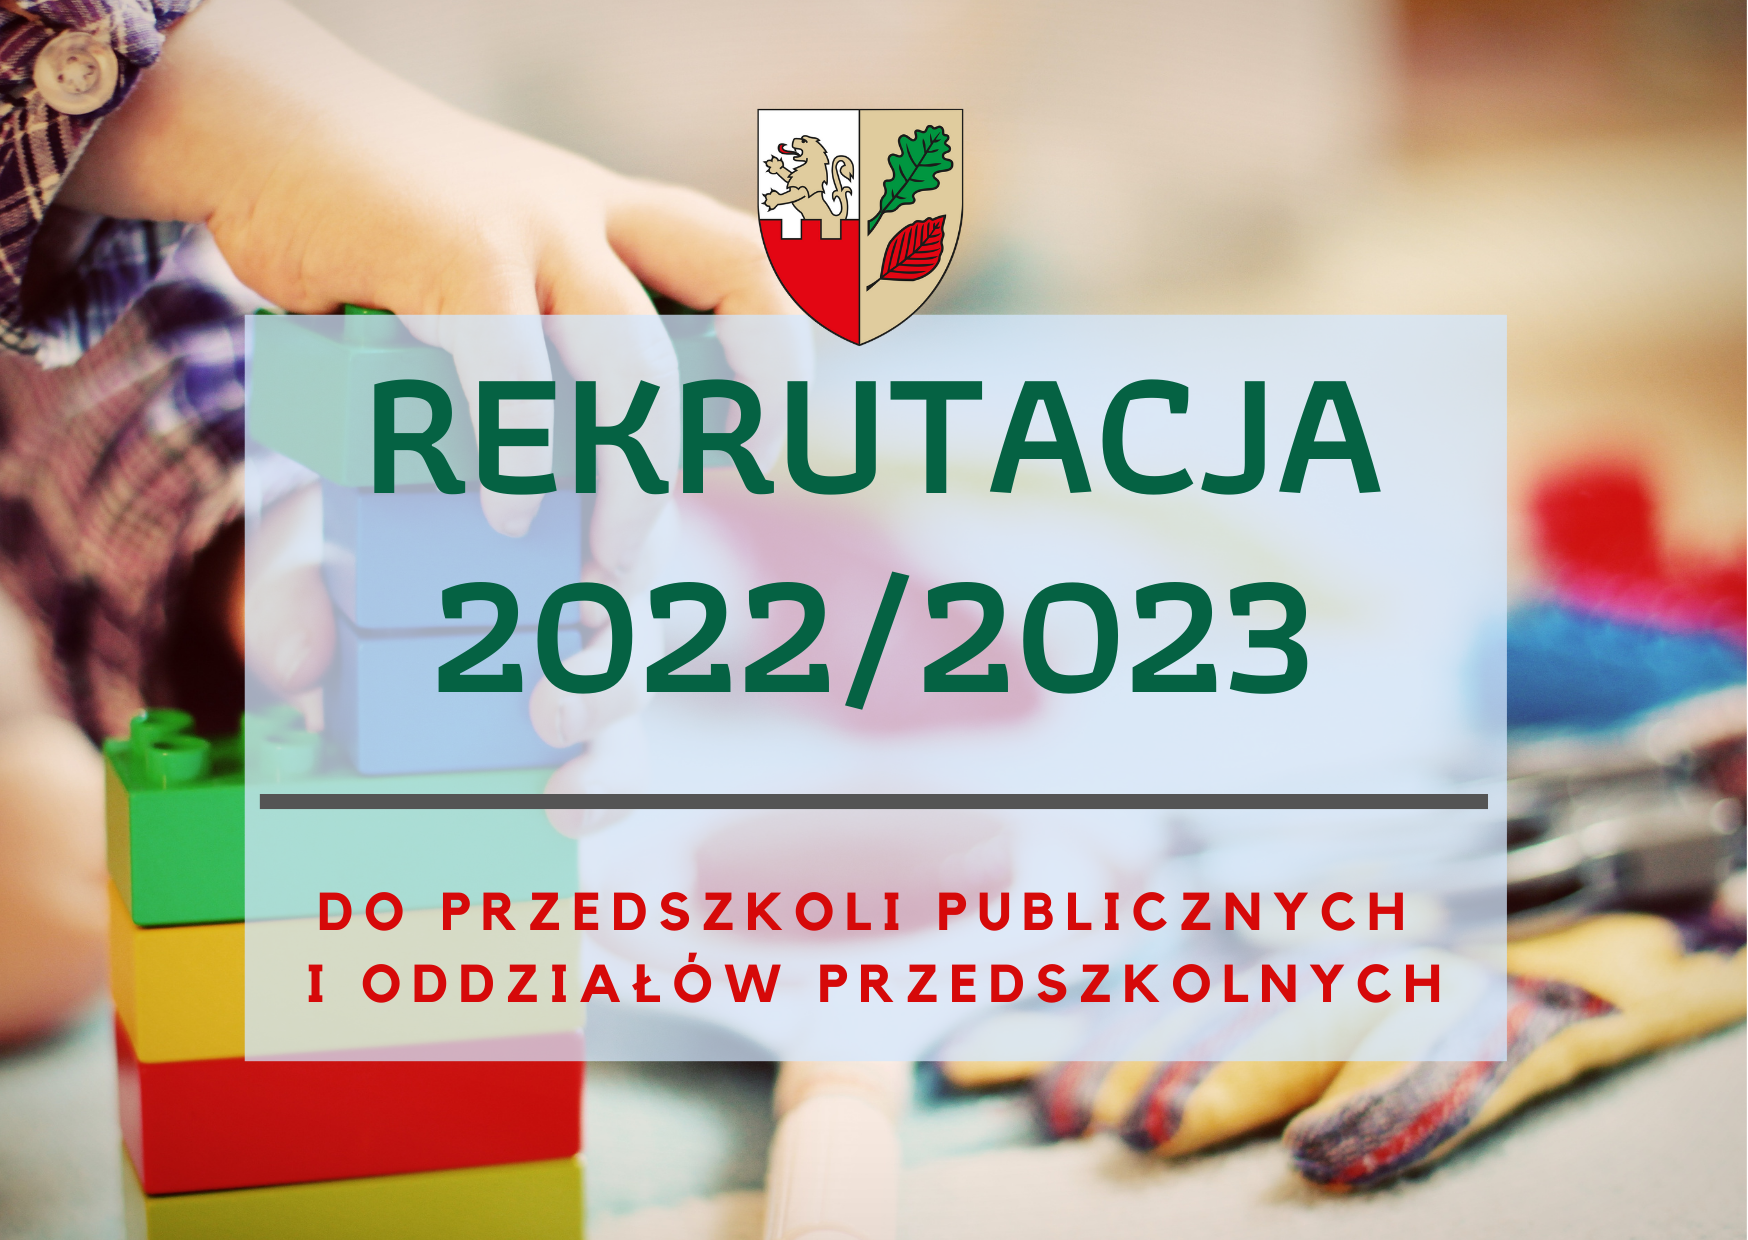 Rekrutacja dzieci do przedszkoli publicznych na rok szkolny 2022/2023